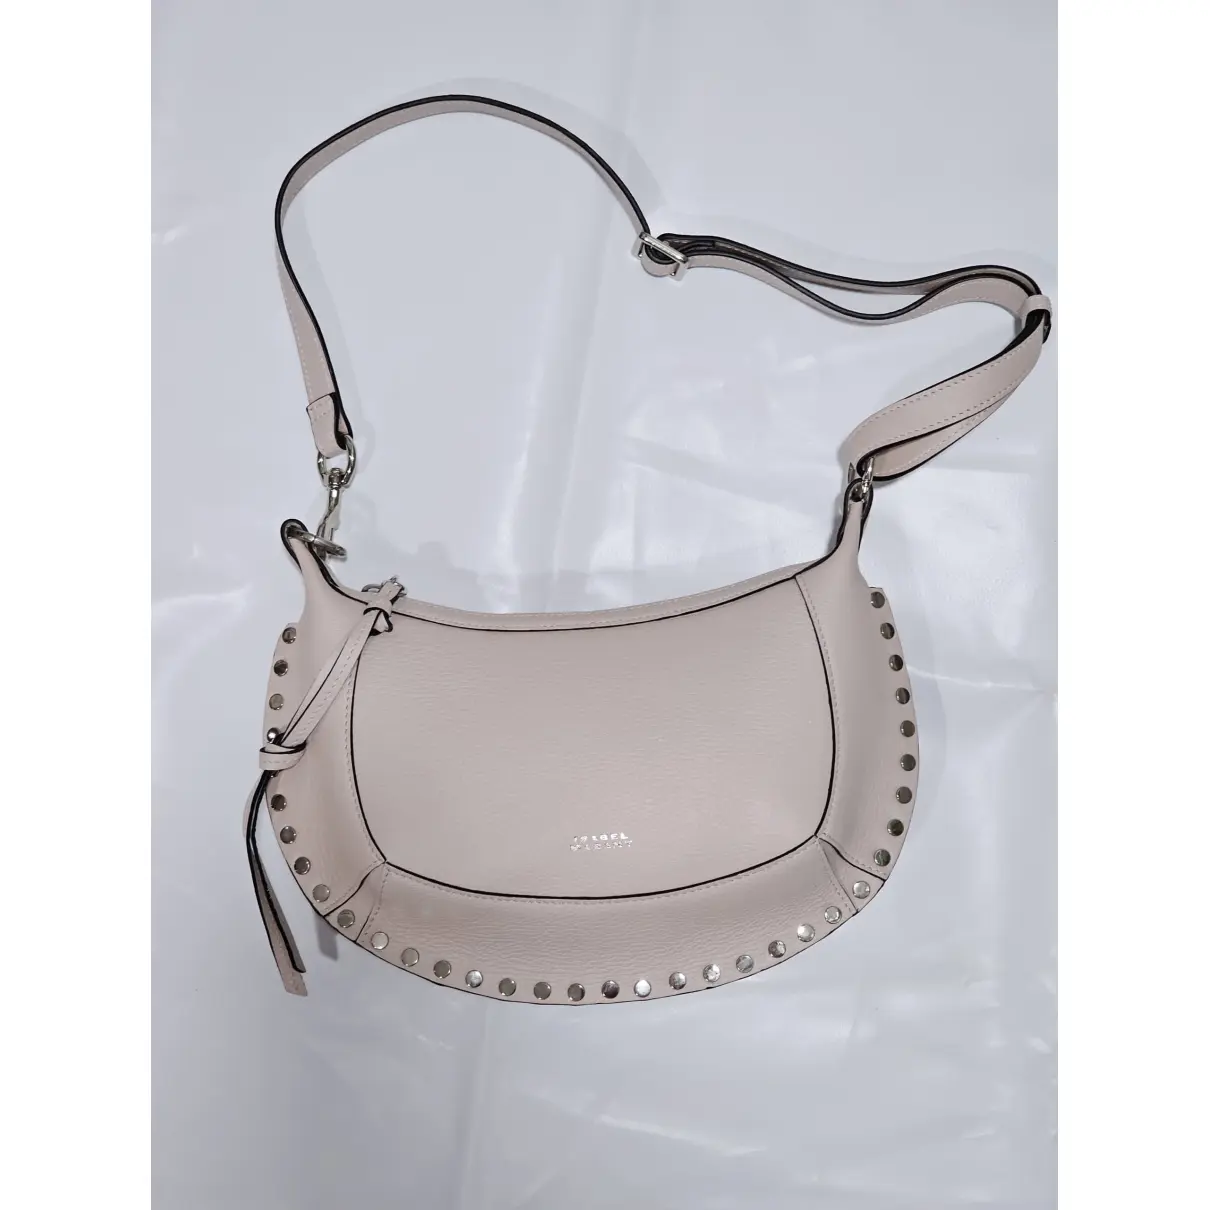 Oksan Moon leather handbag Isabel Marant